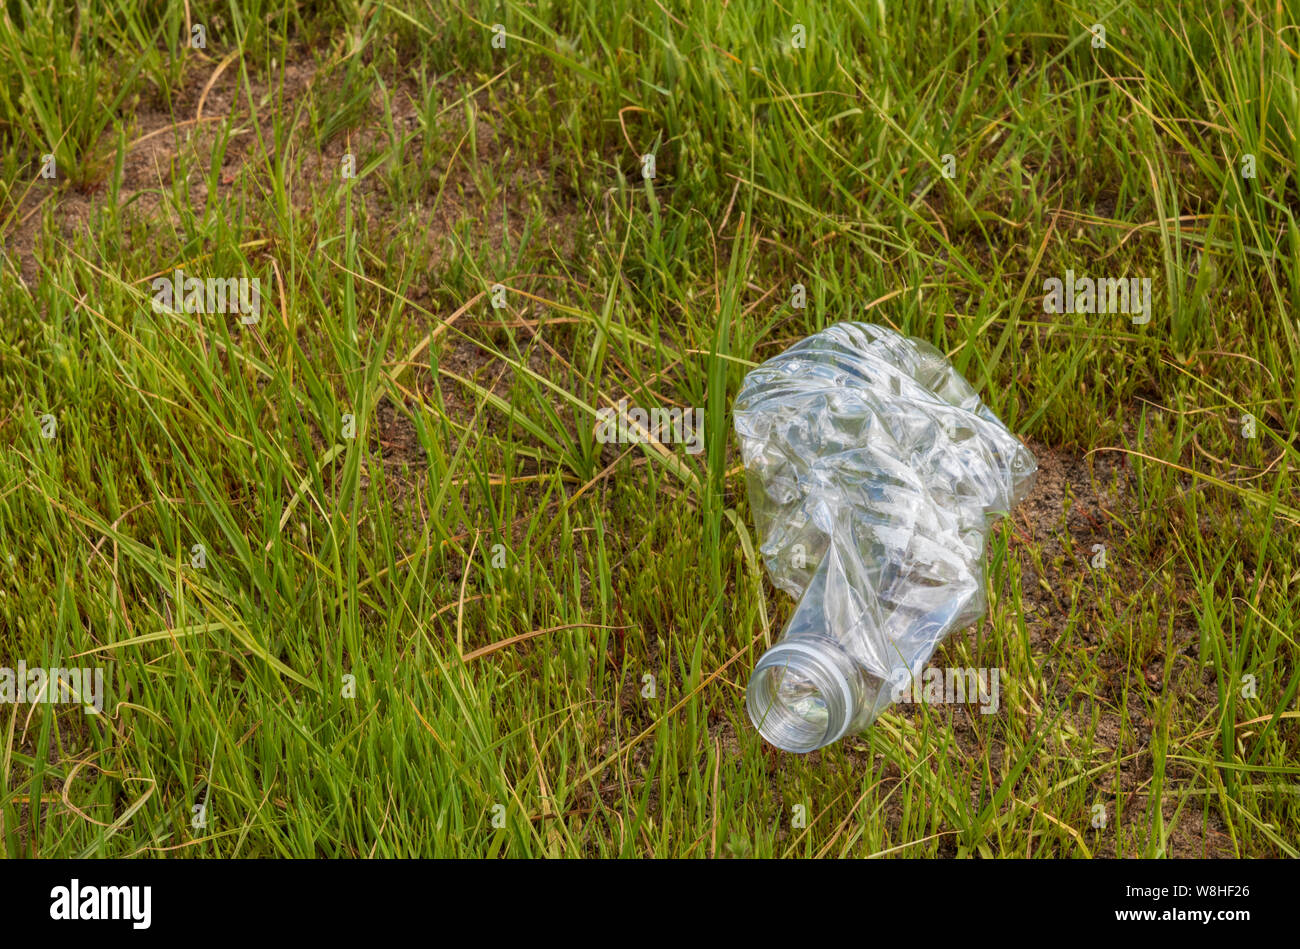 Bouteille de boisson en plastique portant dans l'herbe verte. Bouteille est écrasé et faites de plastique transparent. Banque D'Images